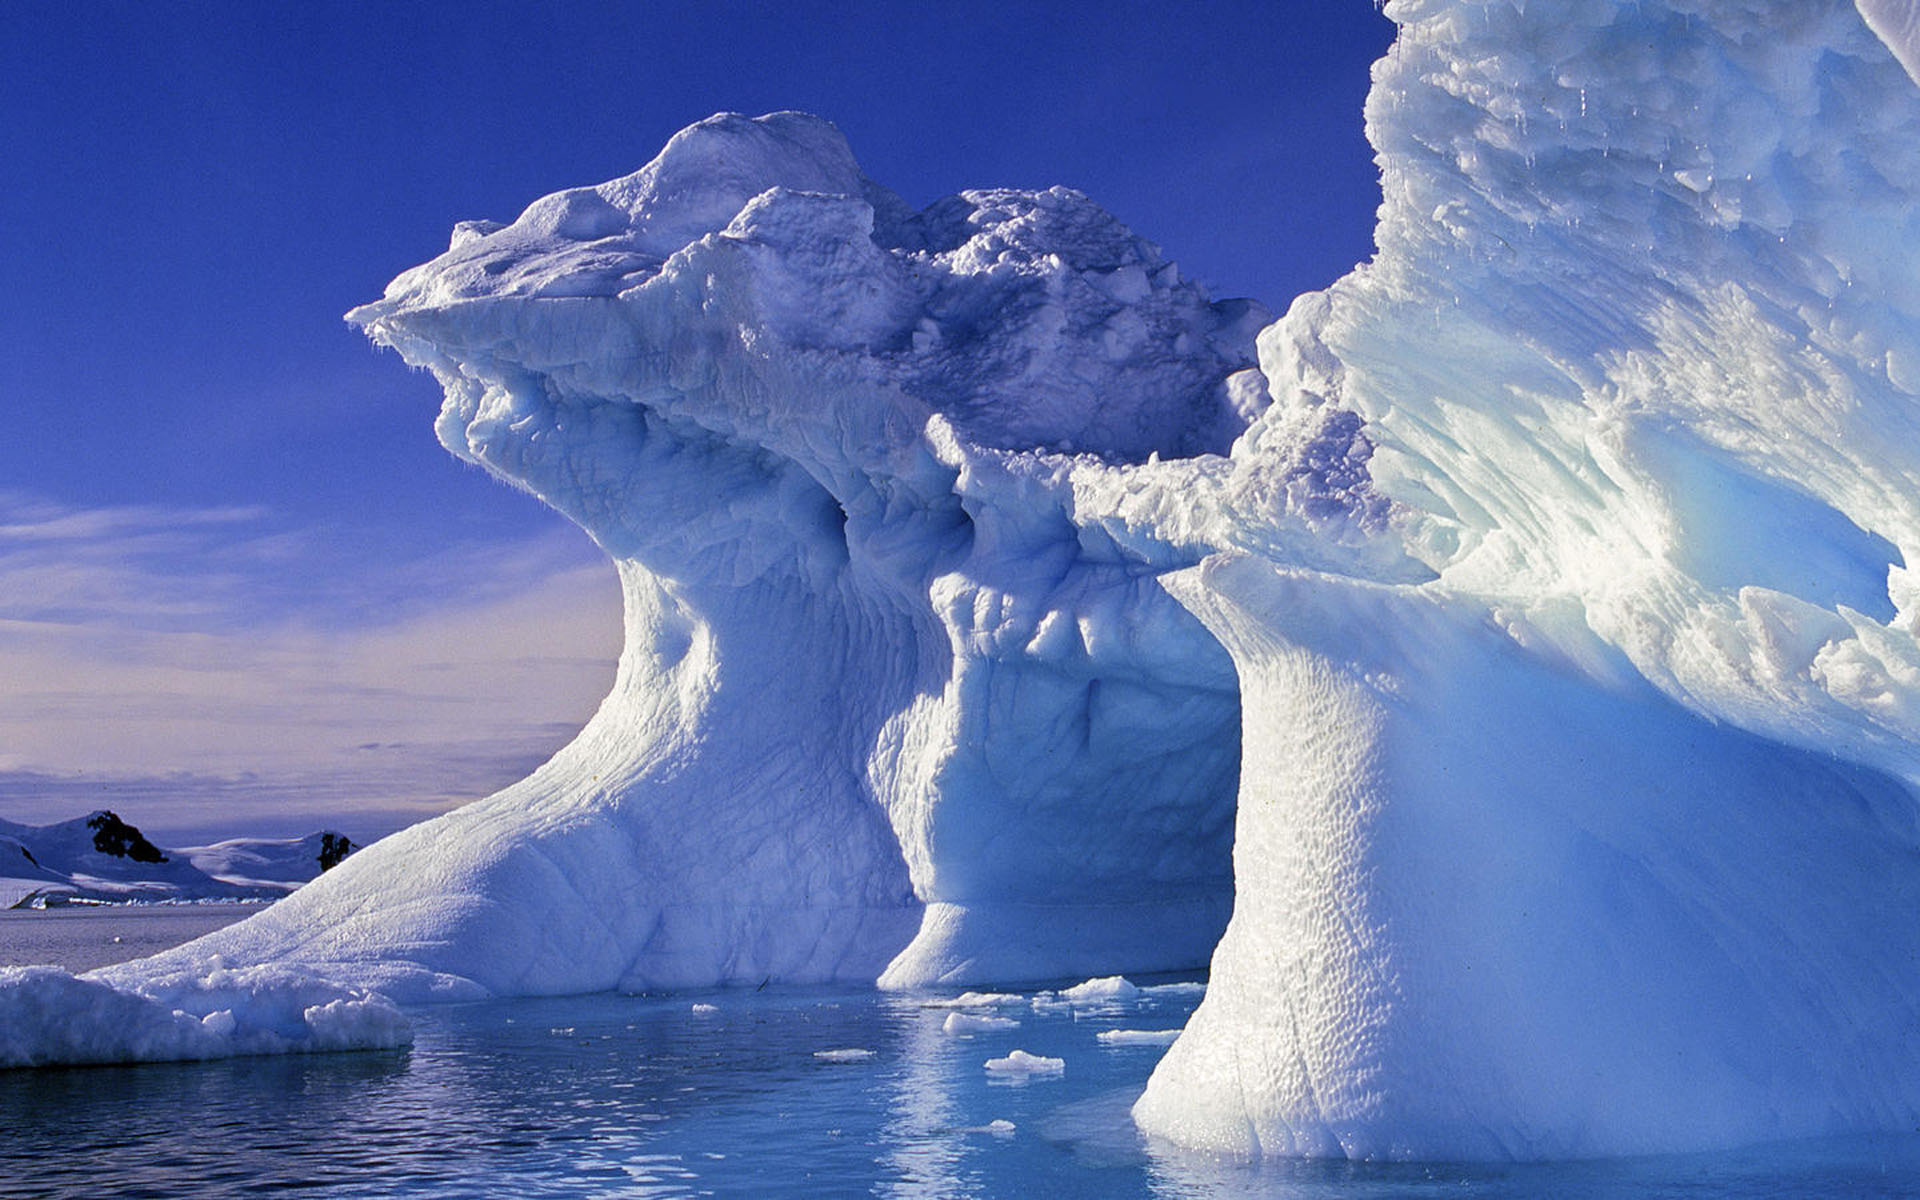 自然风景摄影作品 唯美白色冰山壮观风景图片